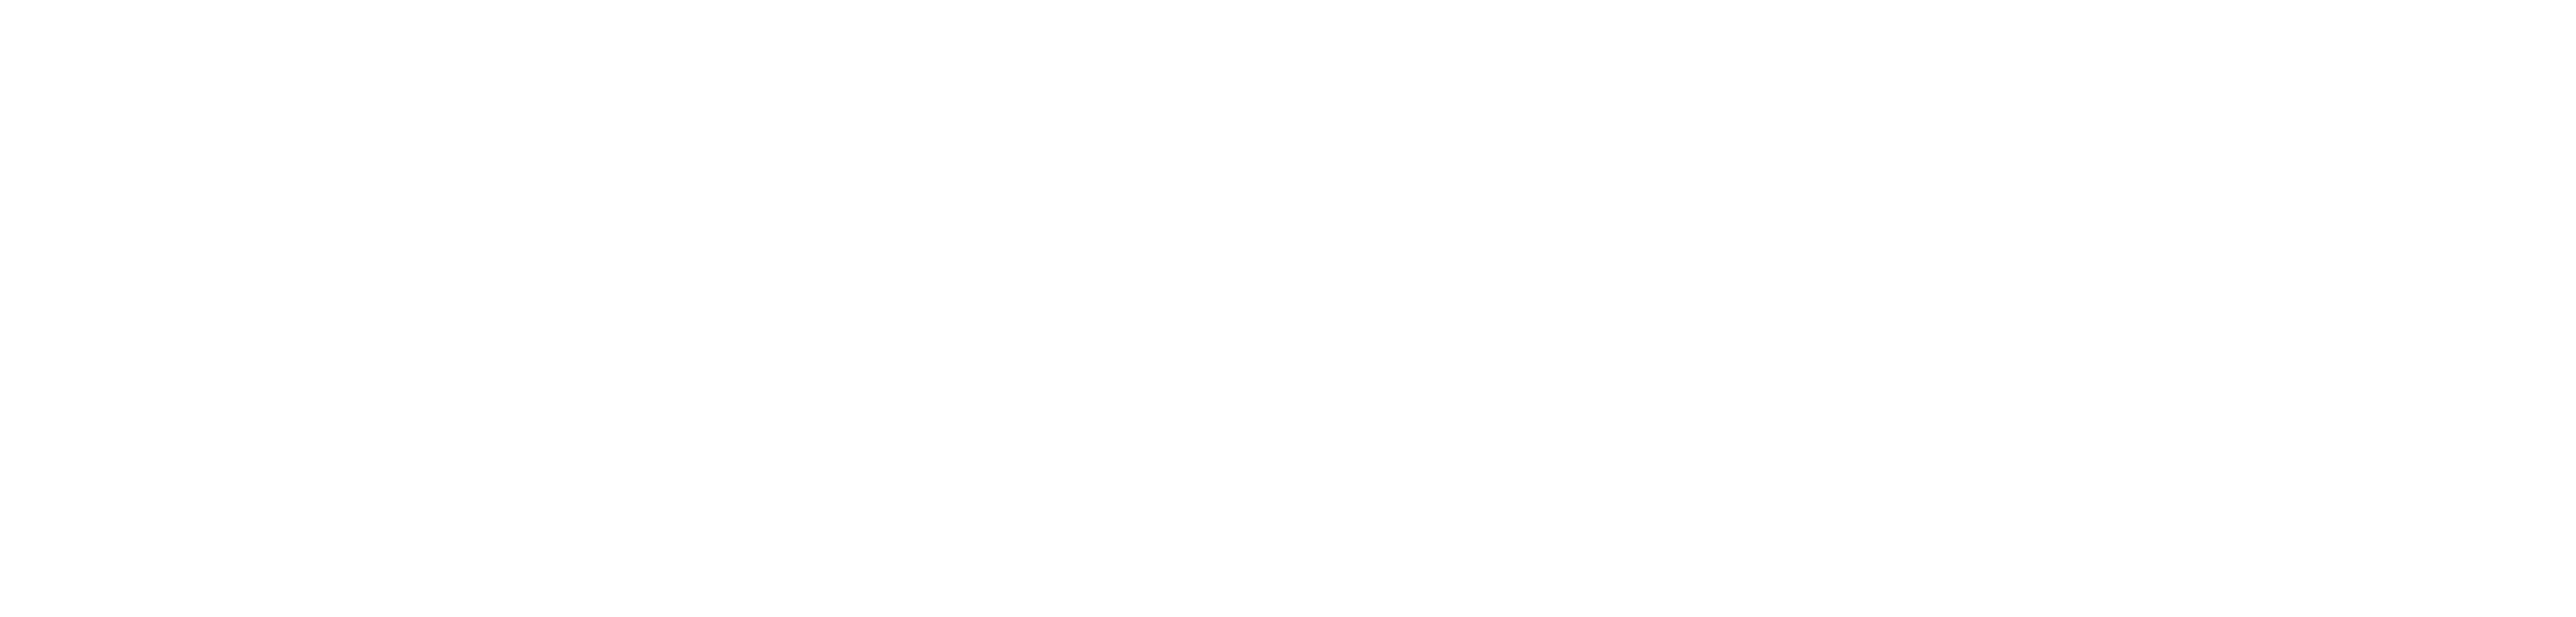 kelly-white-logo